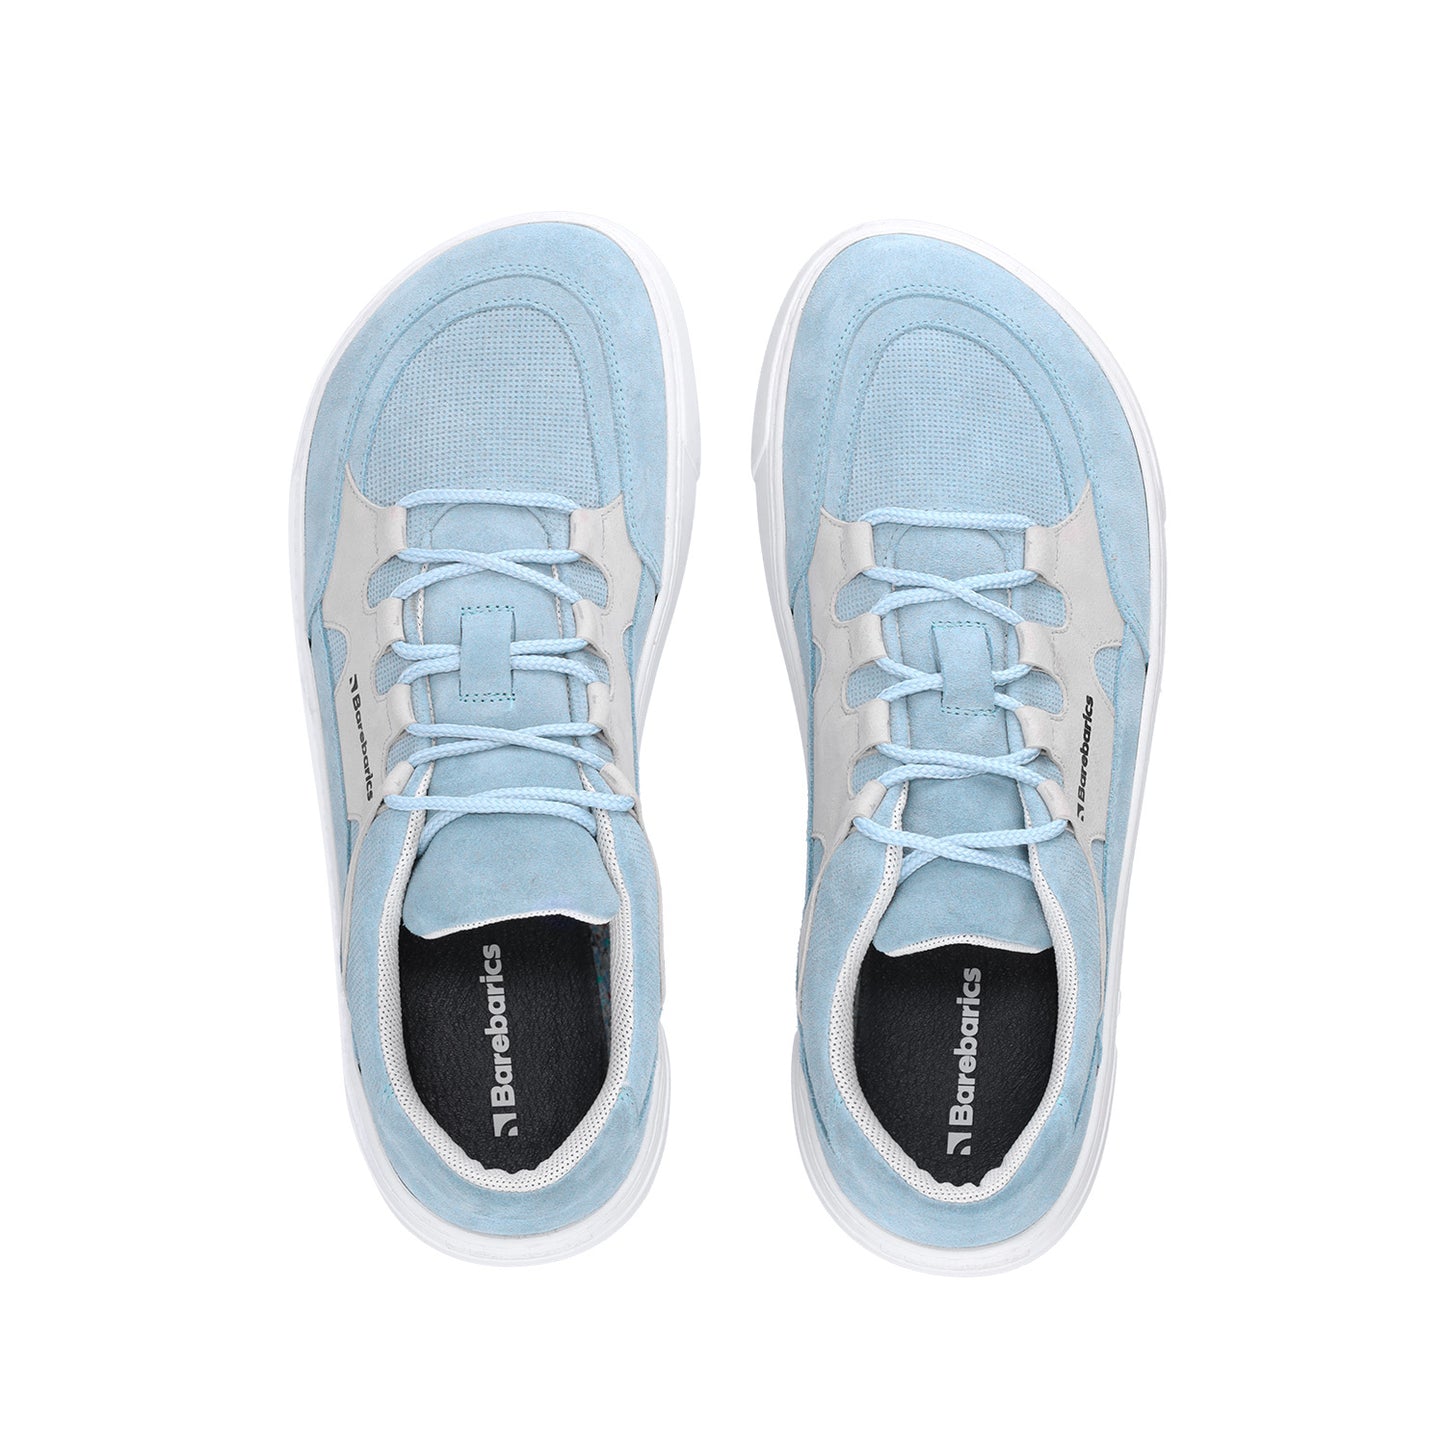 Barebarics Evo Barefoot Sneakers - Light Blue & White